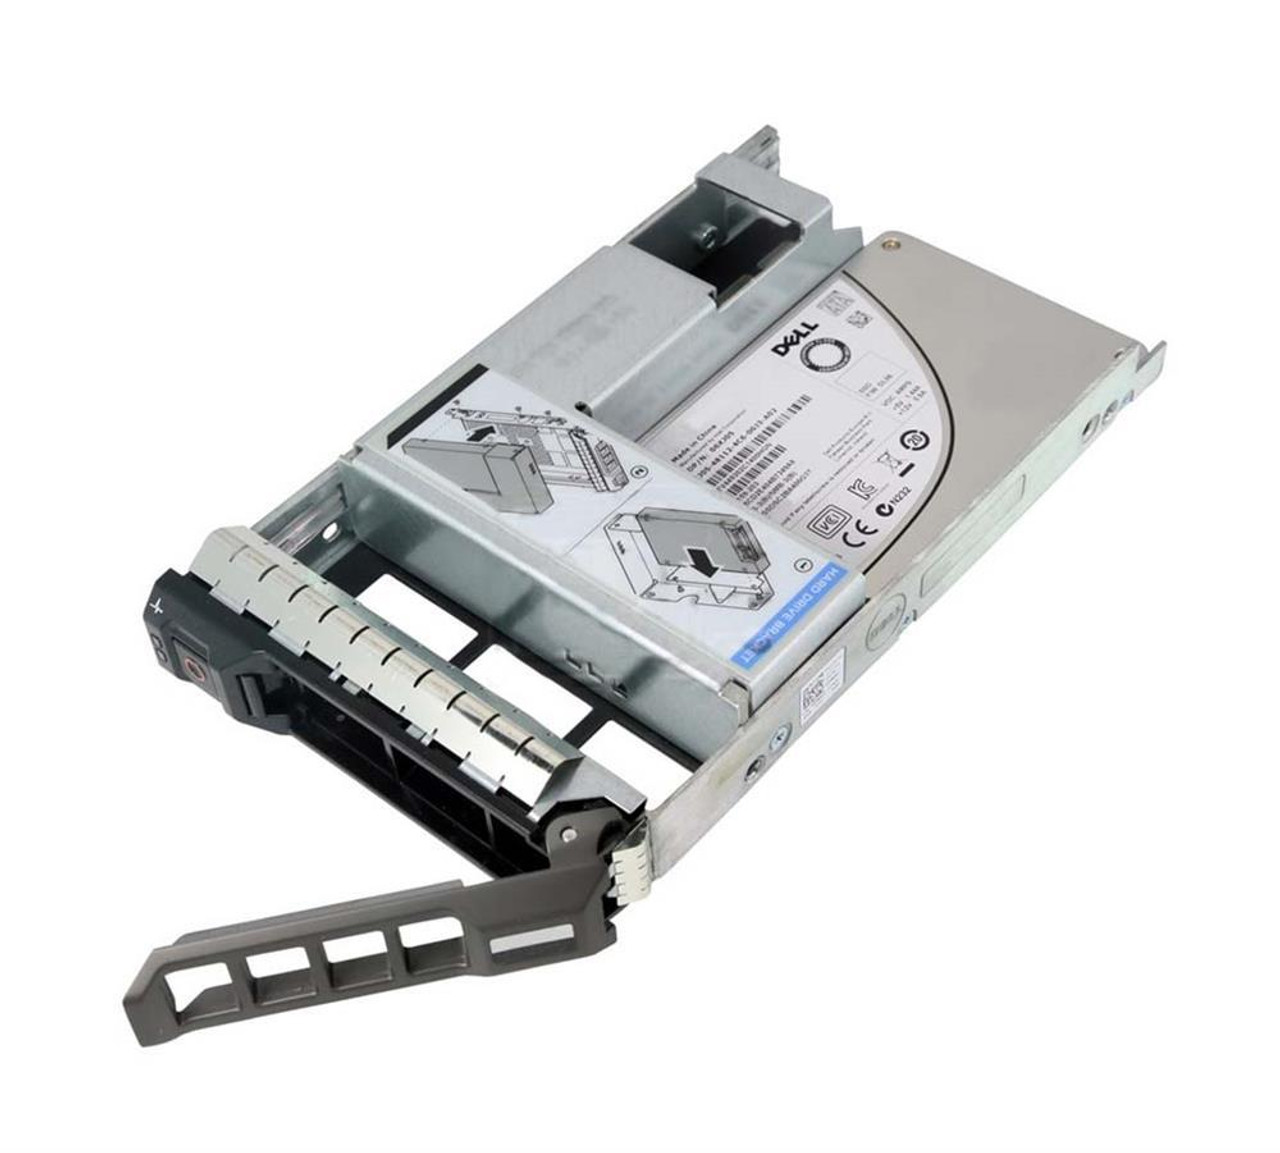 CGVGJ Dell 480GB SATA 6Gbps 512e Read Intensive 2.5-inch Internal Solid State Drive (SSD)